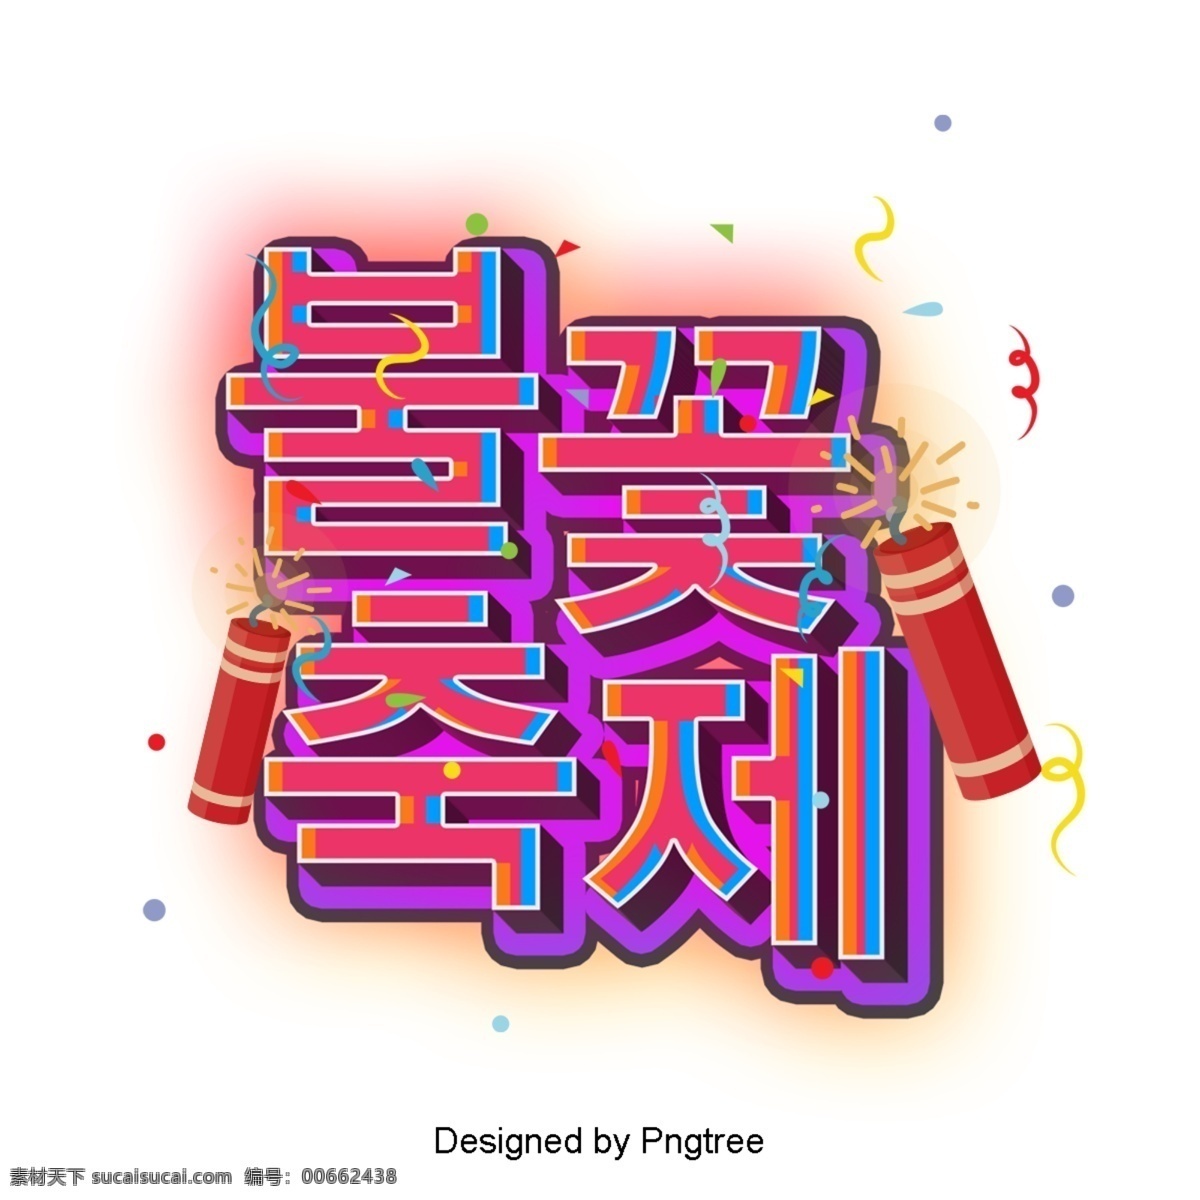 节日 场景 立体 人物 火花 节 彩色绘画 3d 韩文 三维字体 现场 字形 装饰 进步